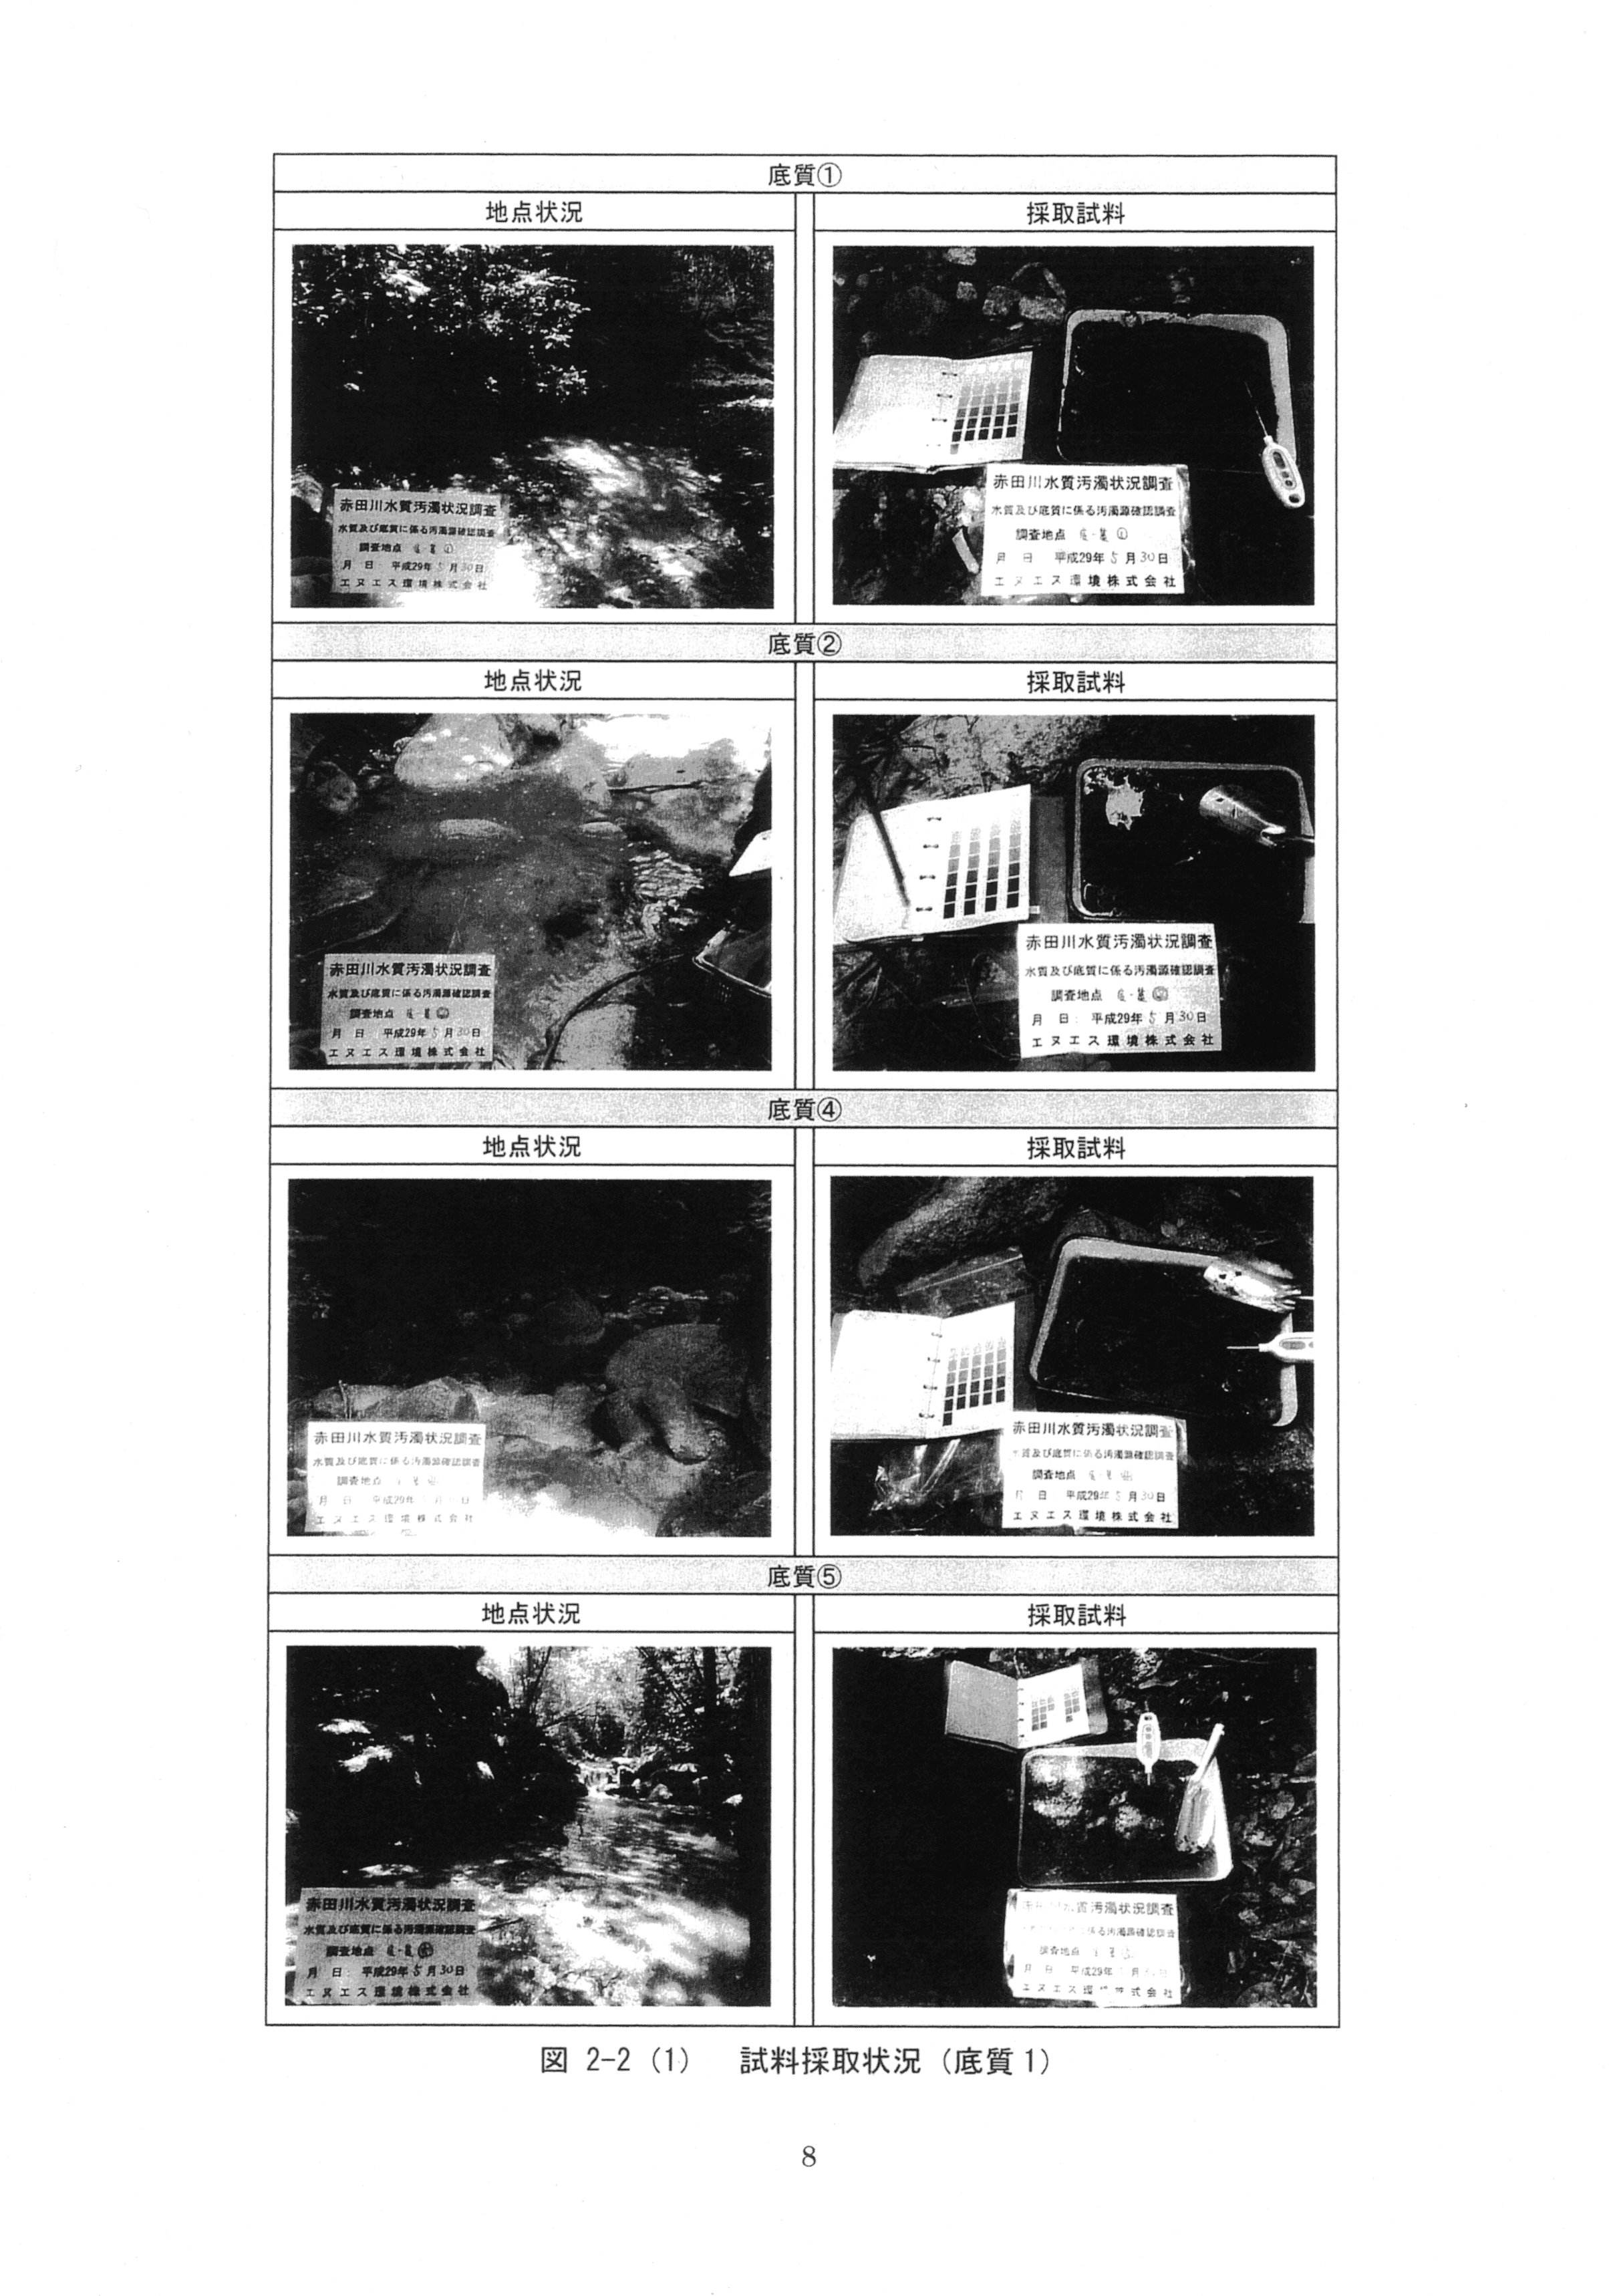 平成29年11月-赤田川水質汚濁状況調査報告書-10